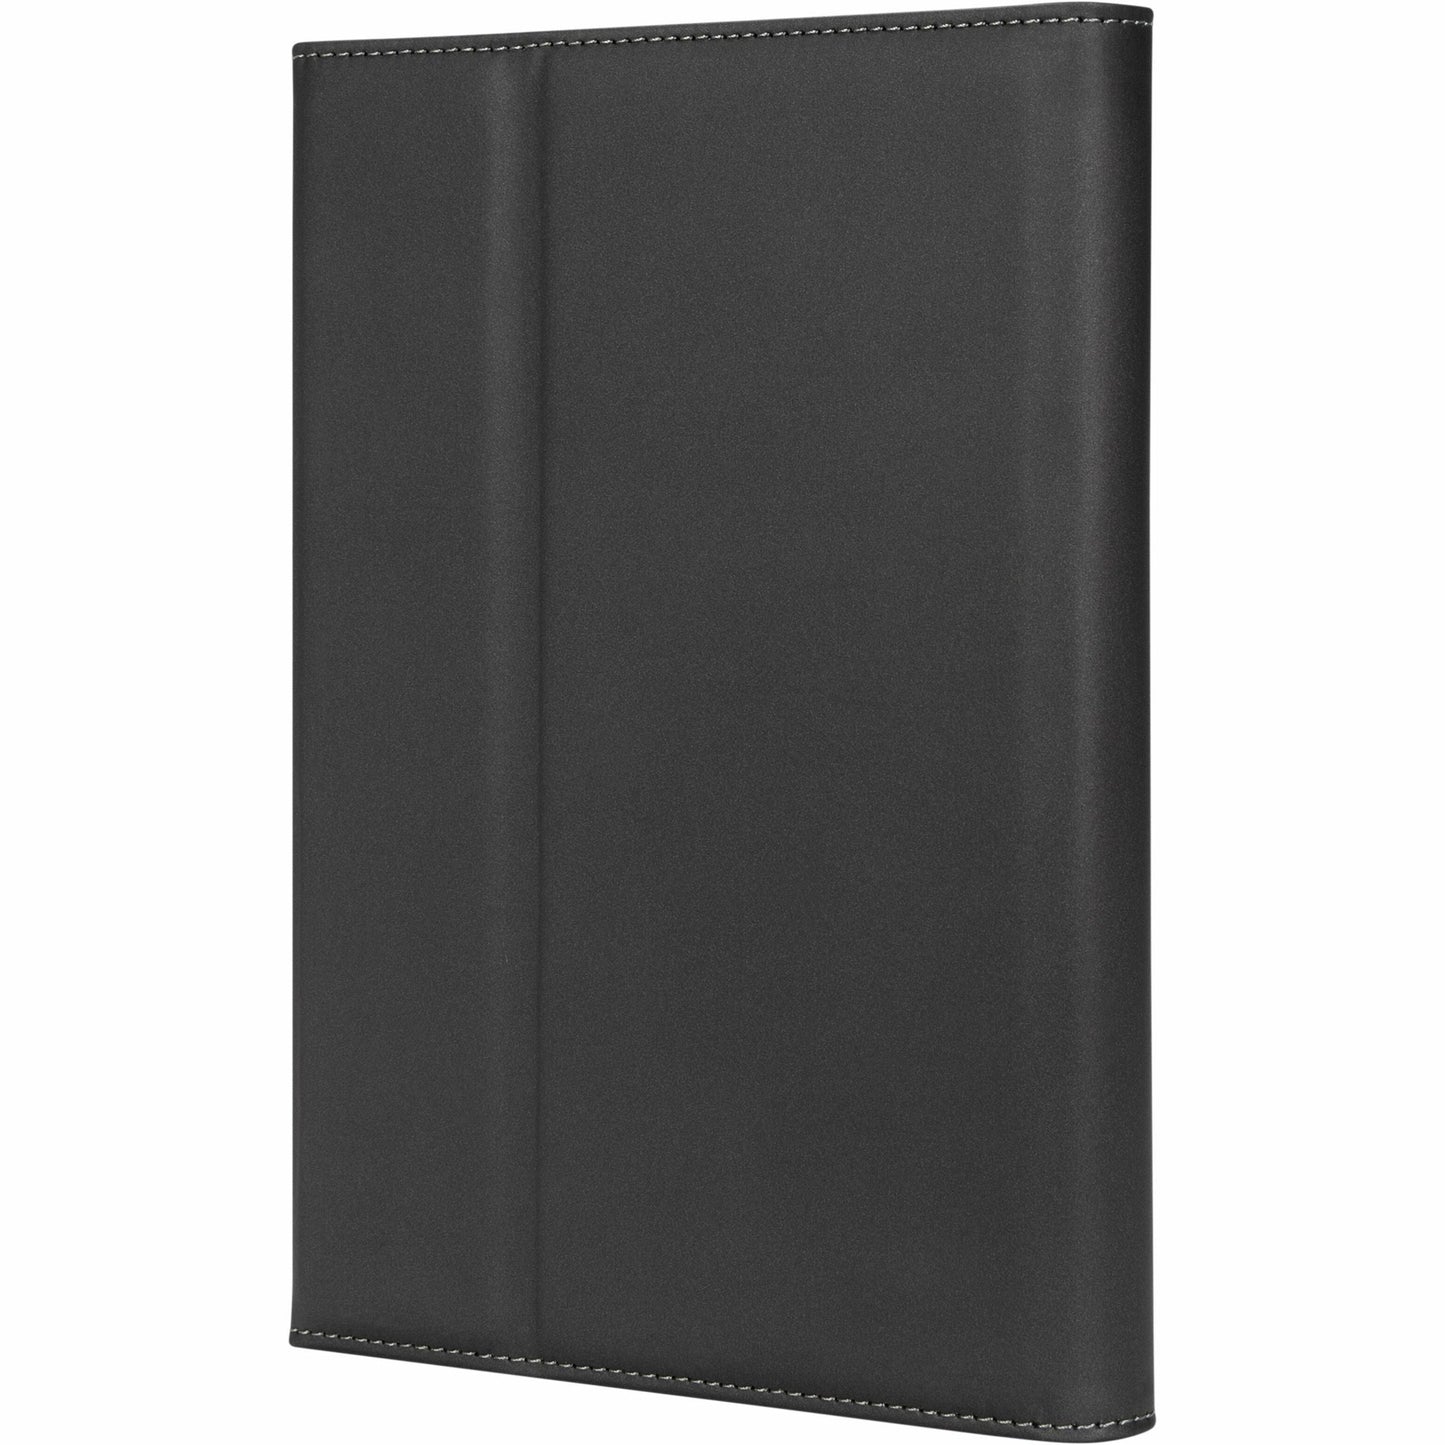 Targus Versavu THZ694GL Carrying Case (Folio) Apple iPad mini iPad mini (5th Generation) iPad mini 4 iPad mini 3 iPad mini 2 Tablet - Black